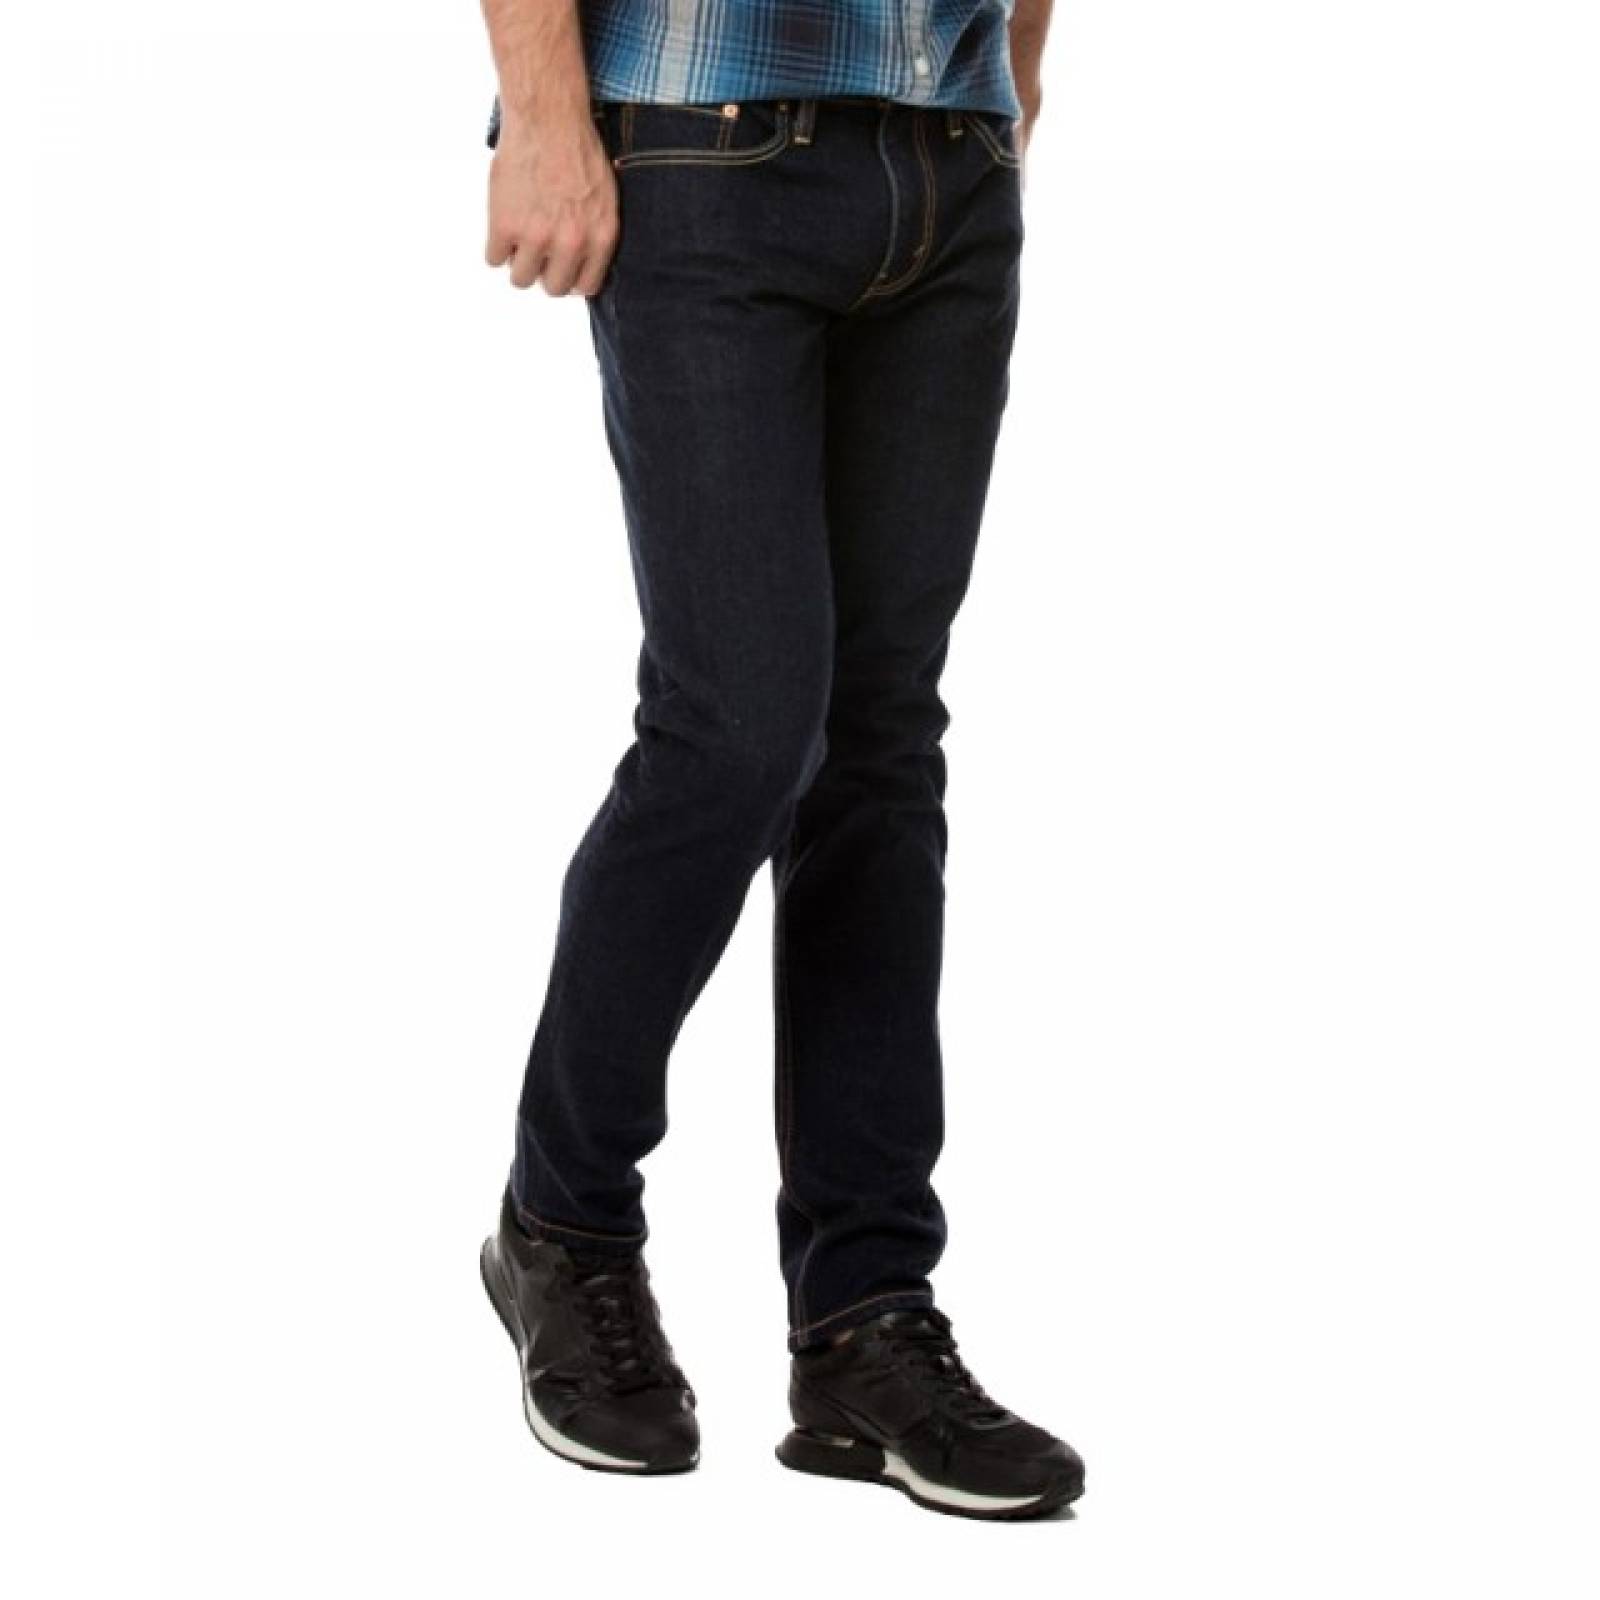 Jeans Levis 511 Slim Fit 04511-2402